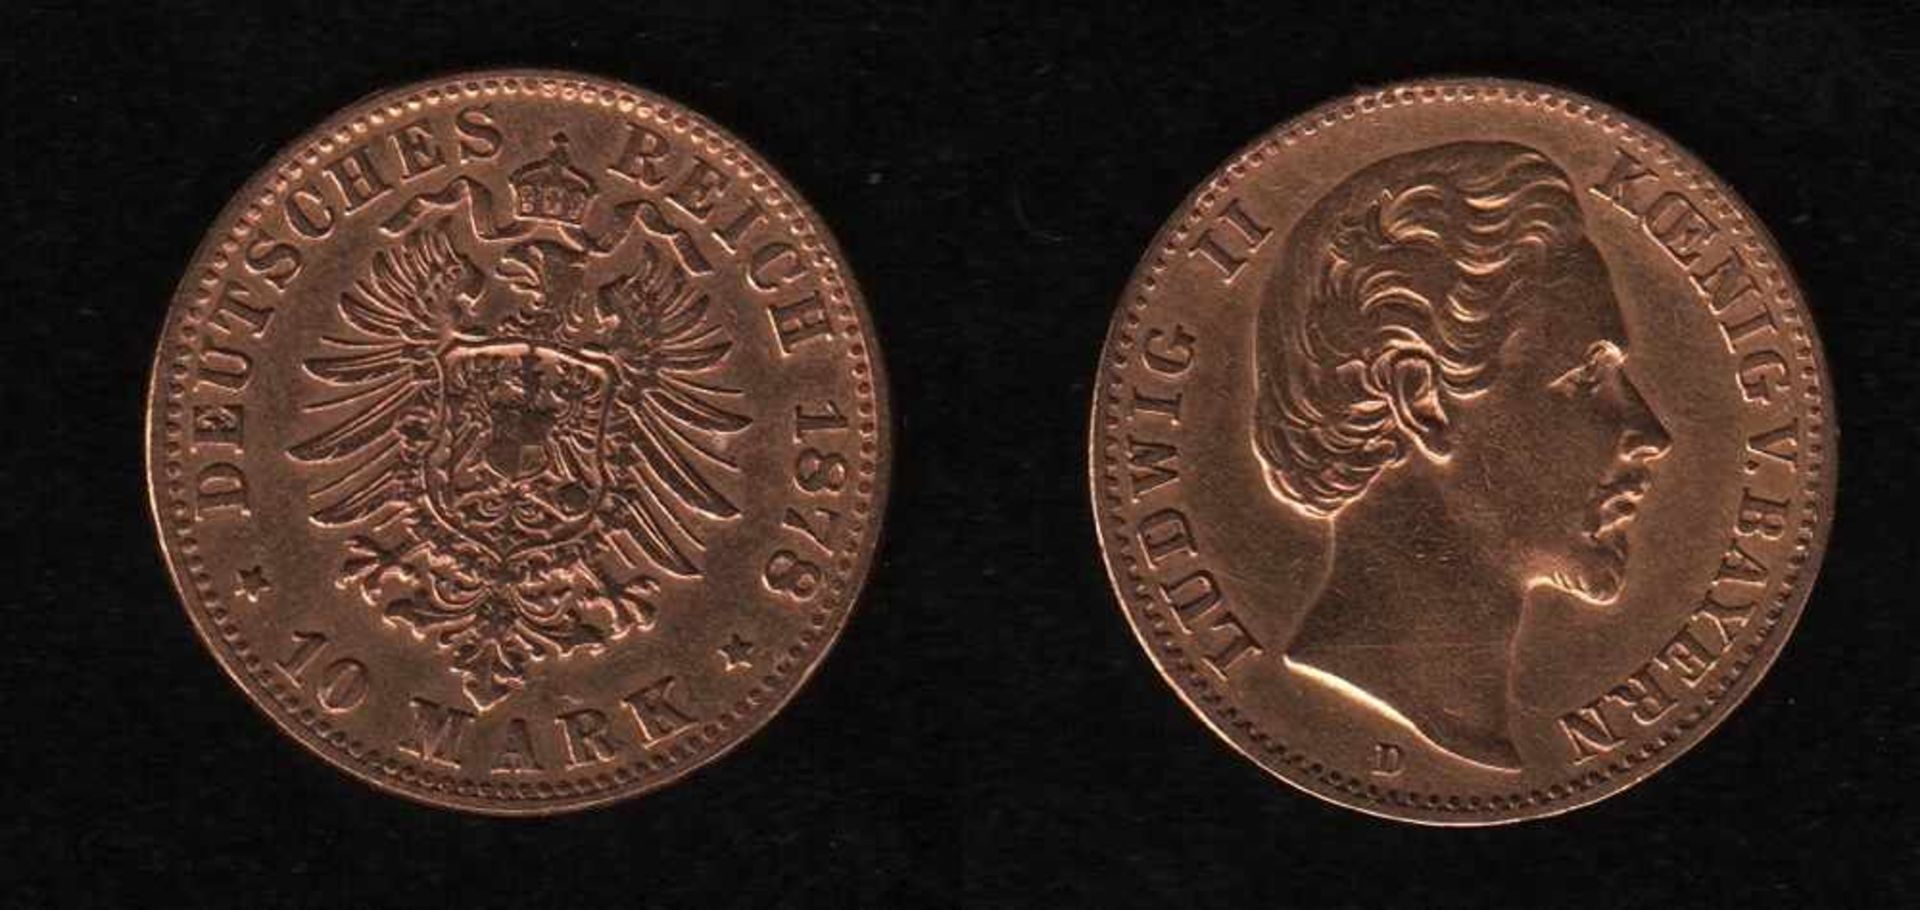 Deutsches Reich. Goldmünze.10 Mark. Ludwig II., König von Bayern. D 1878. Vorderseite: Porträt